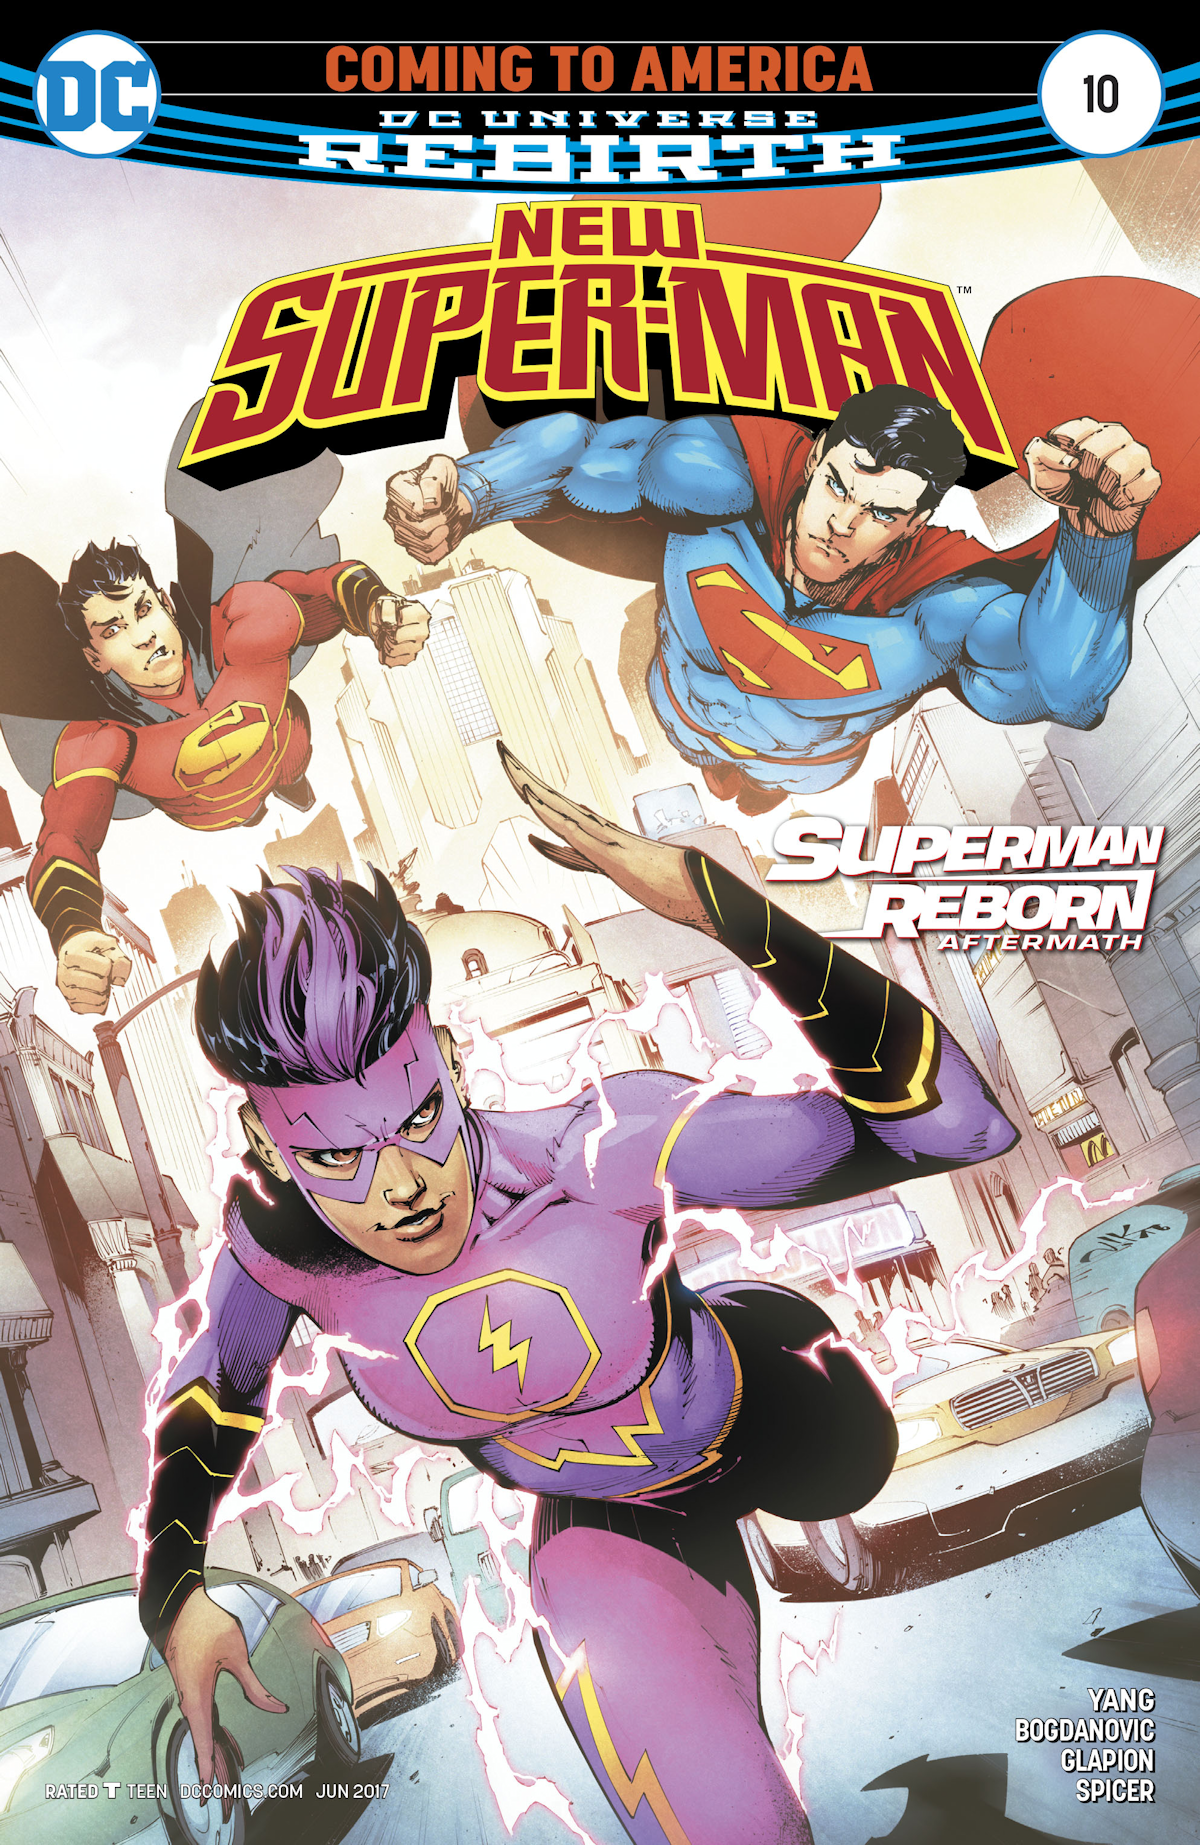 New Super-Man 10 (Cover A)